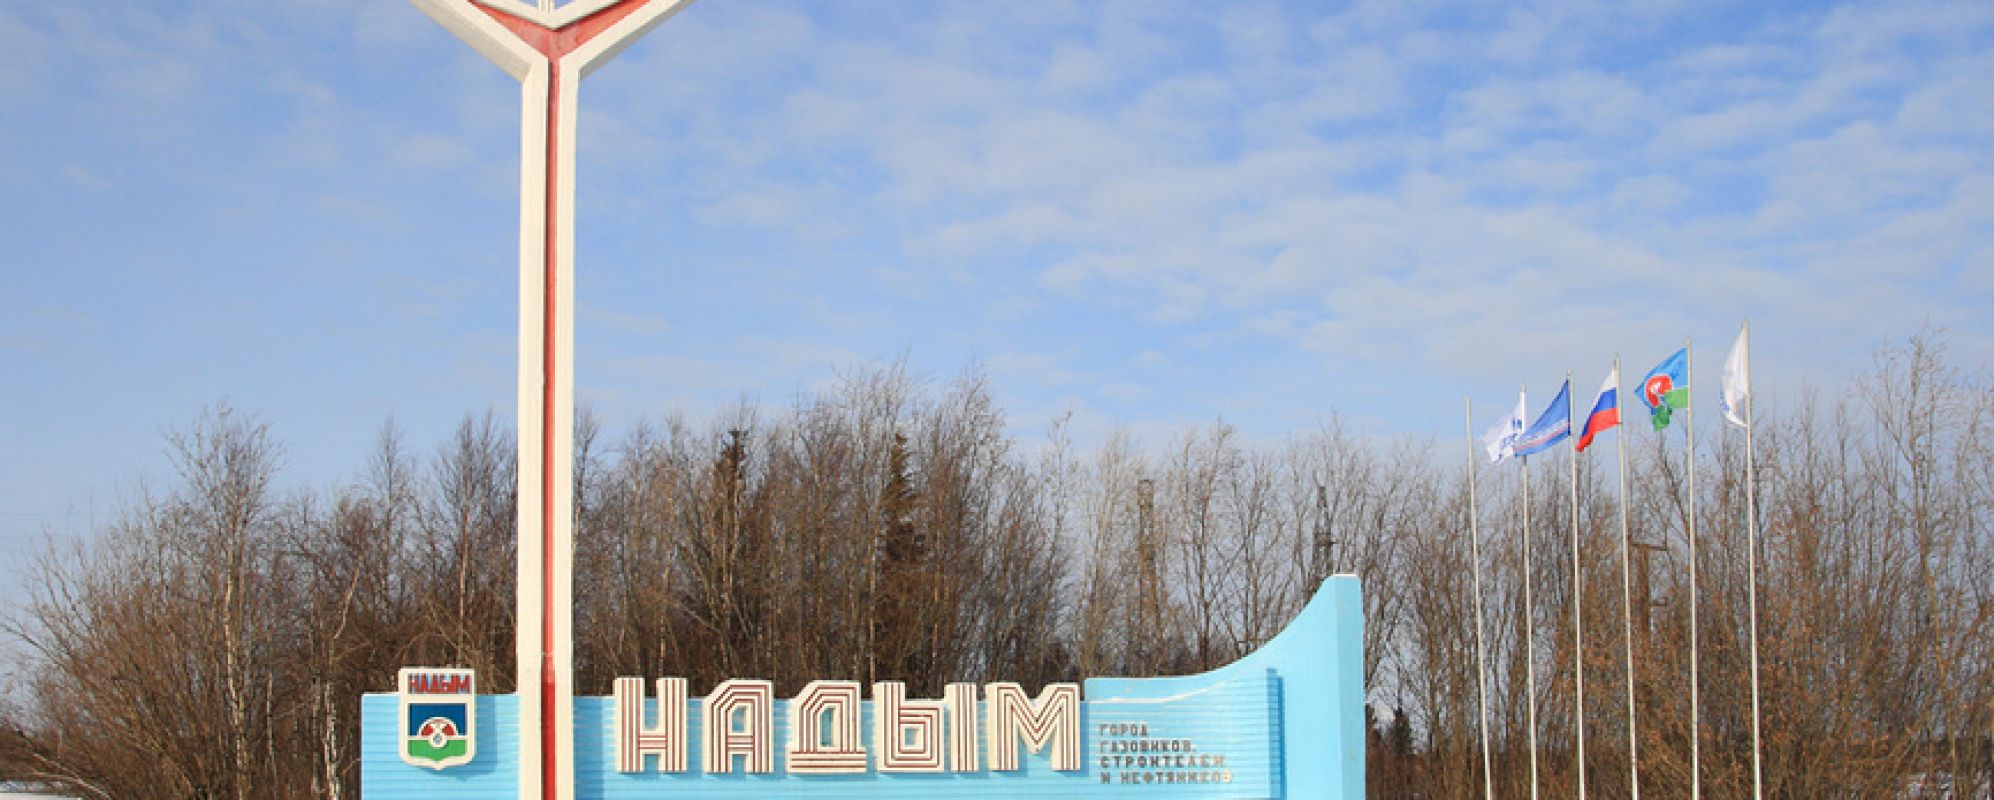 Фотографии памятника Стела Надым - город газовиков, строителей и нефтяников